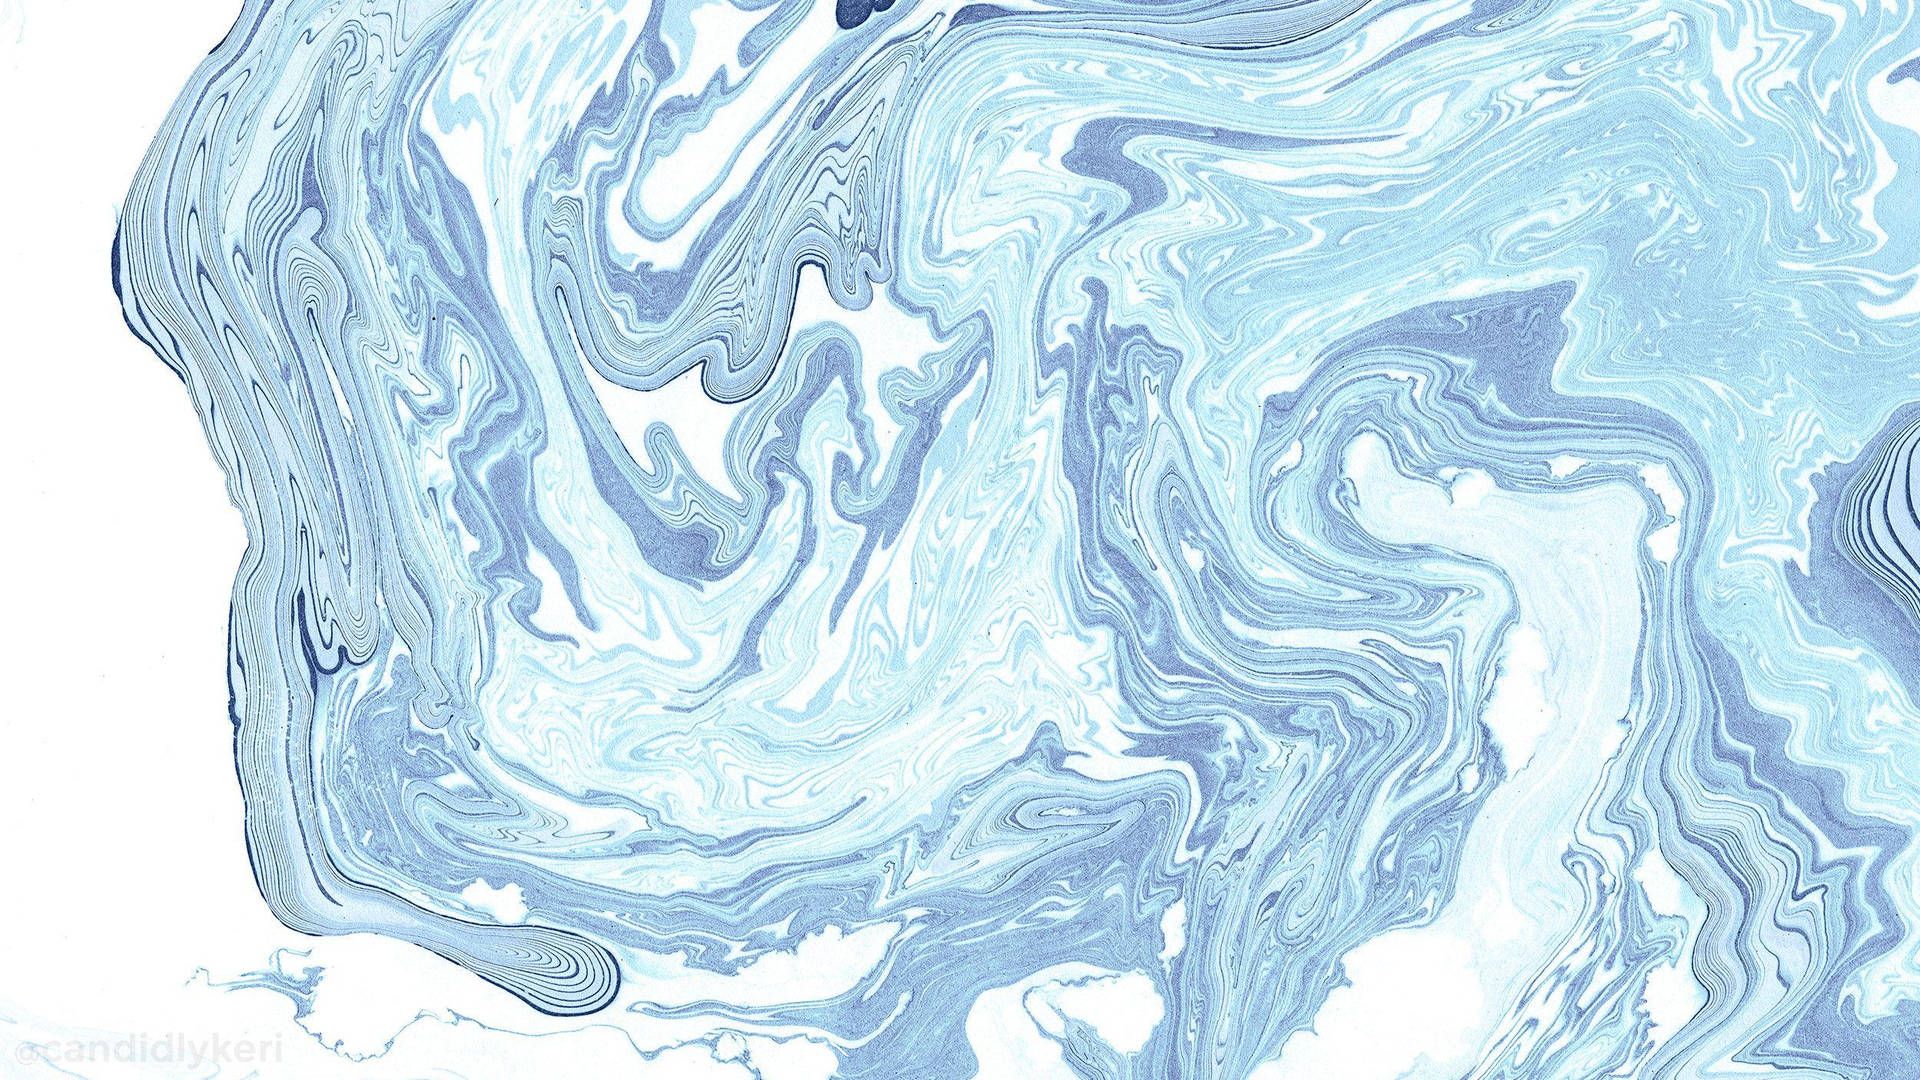  Mac Hintergrundbild 1920x1080. Download Aesthetic Macbook Blue Water Abstract Wallpaper